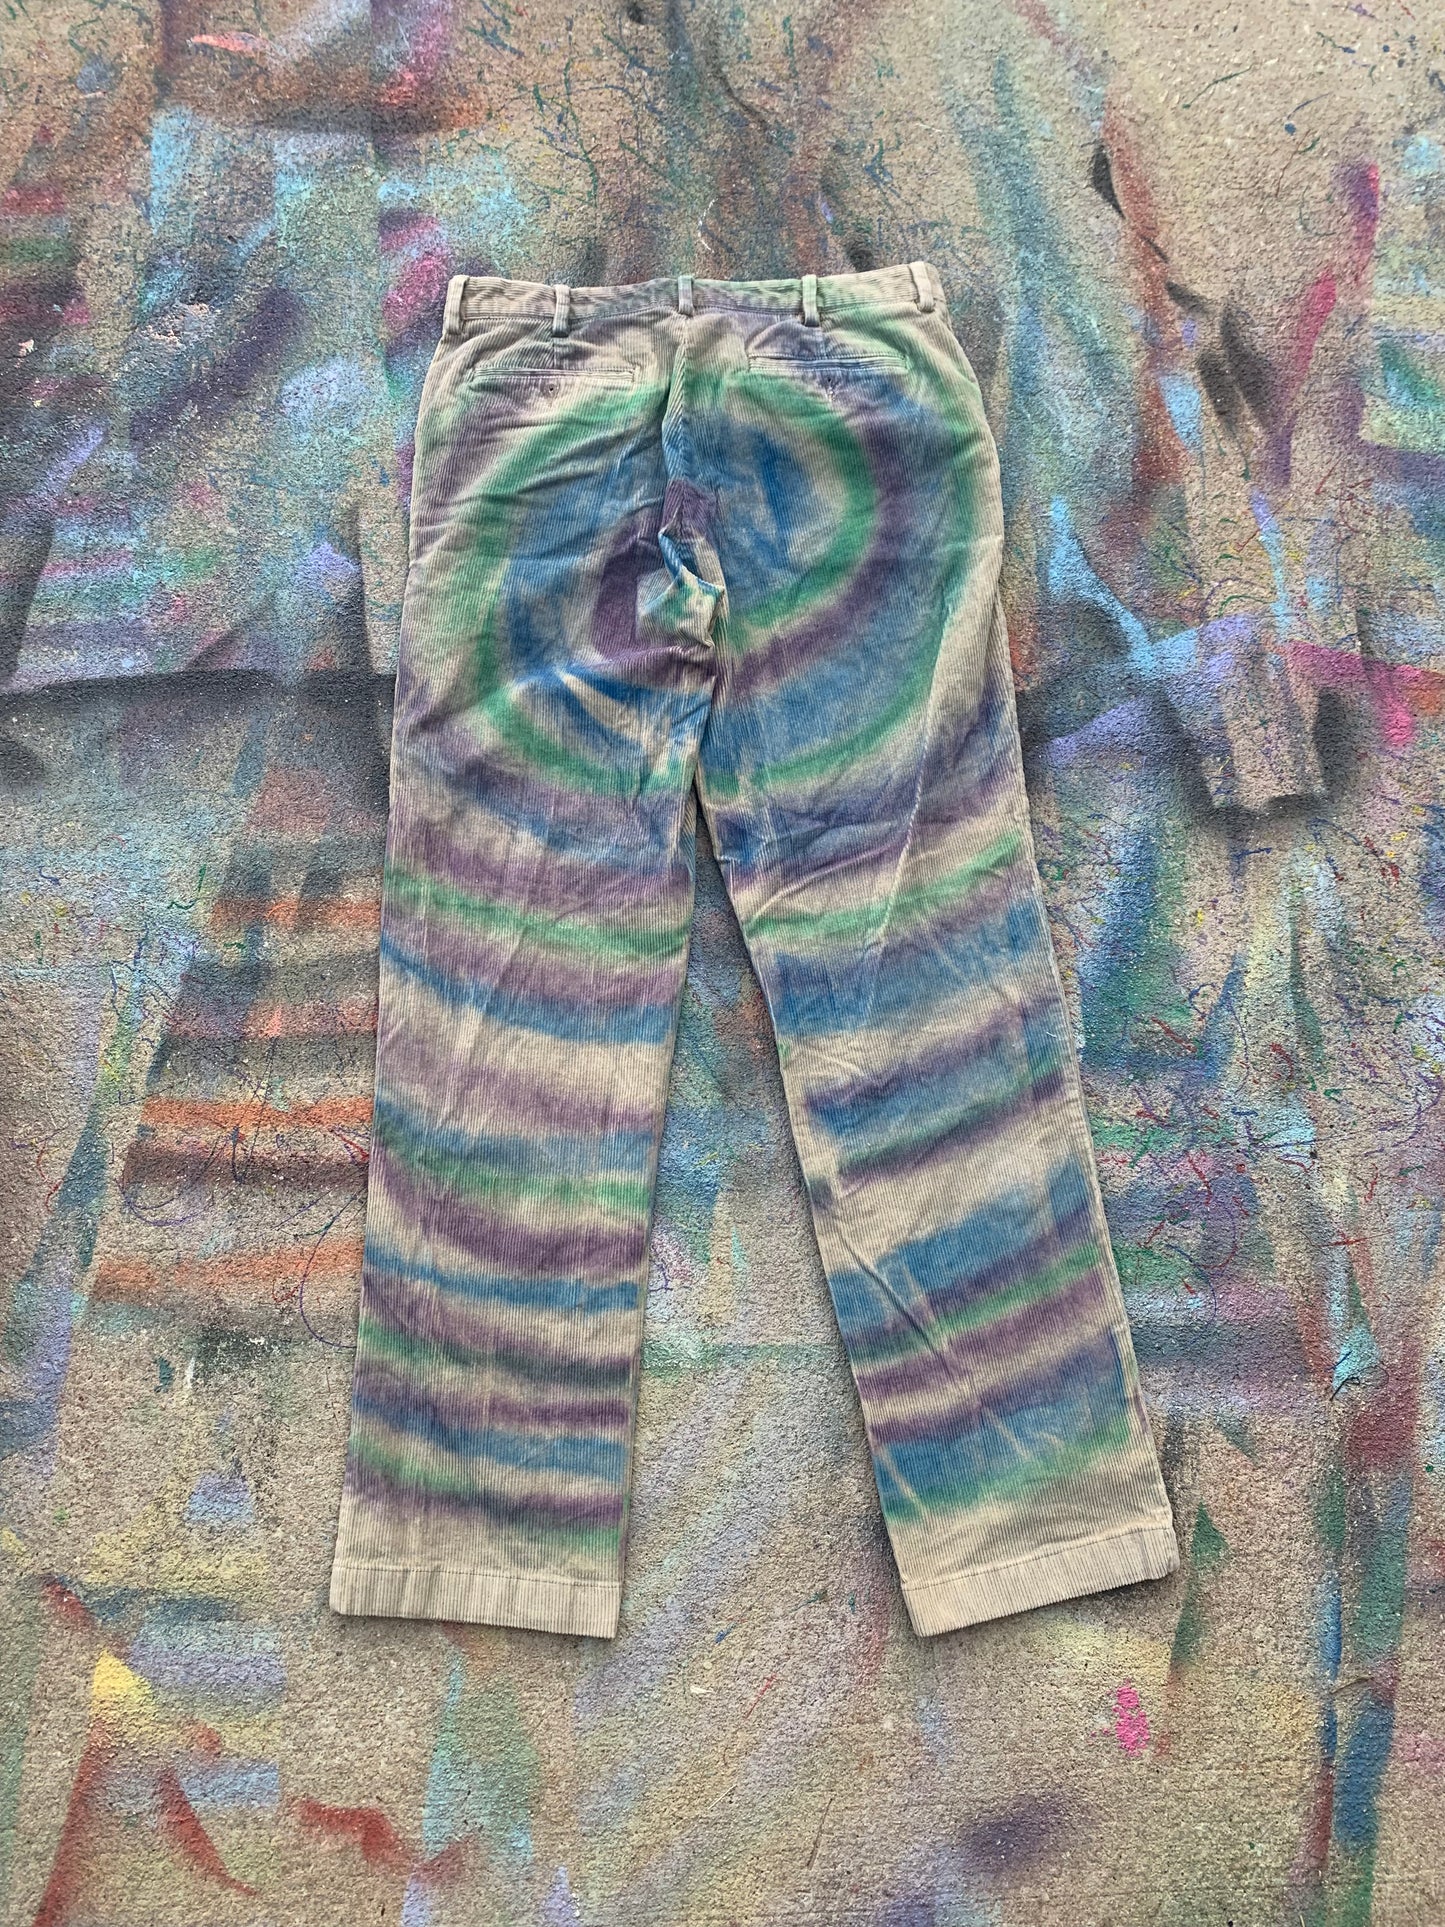 (LS) Spiral Corduroy Pants (Purple/Green/Blue/Tan)- 34/34